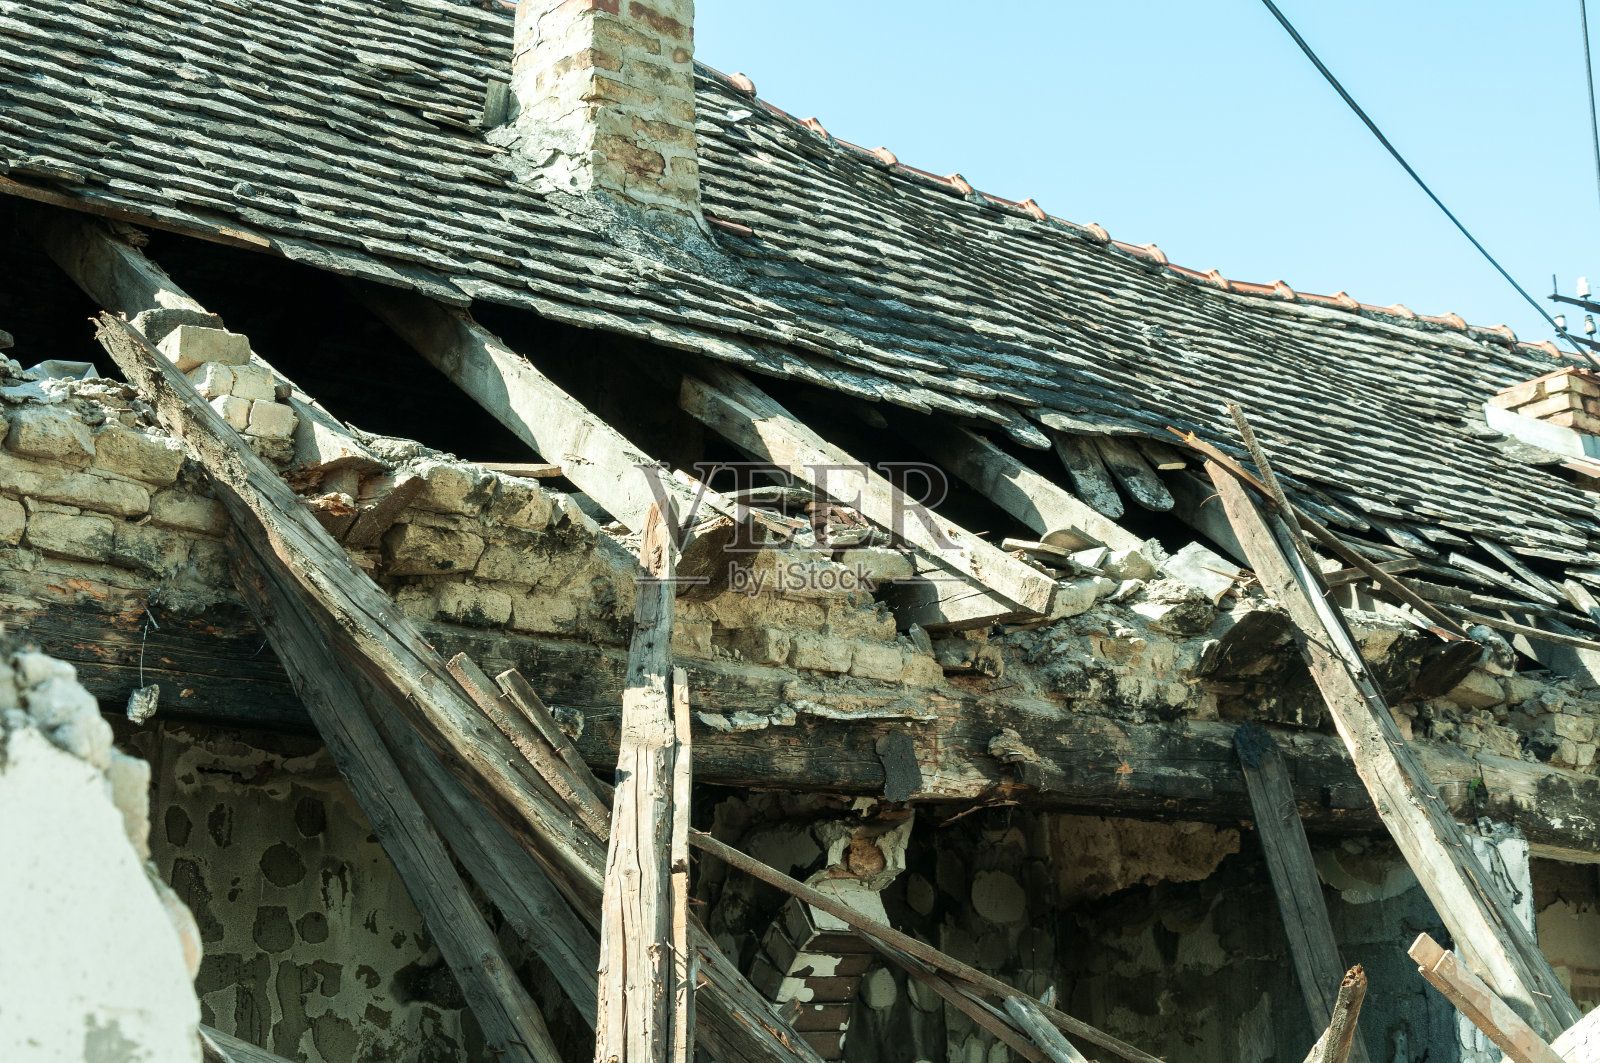 乌克兰东部一座废弃民房的一部分在战区被手榴弹爆炸损坏照片摄影图片